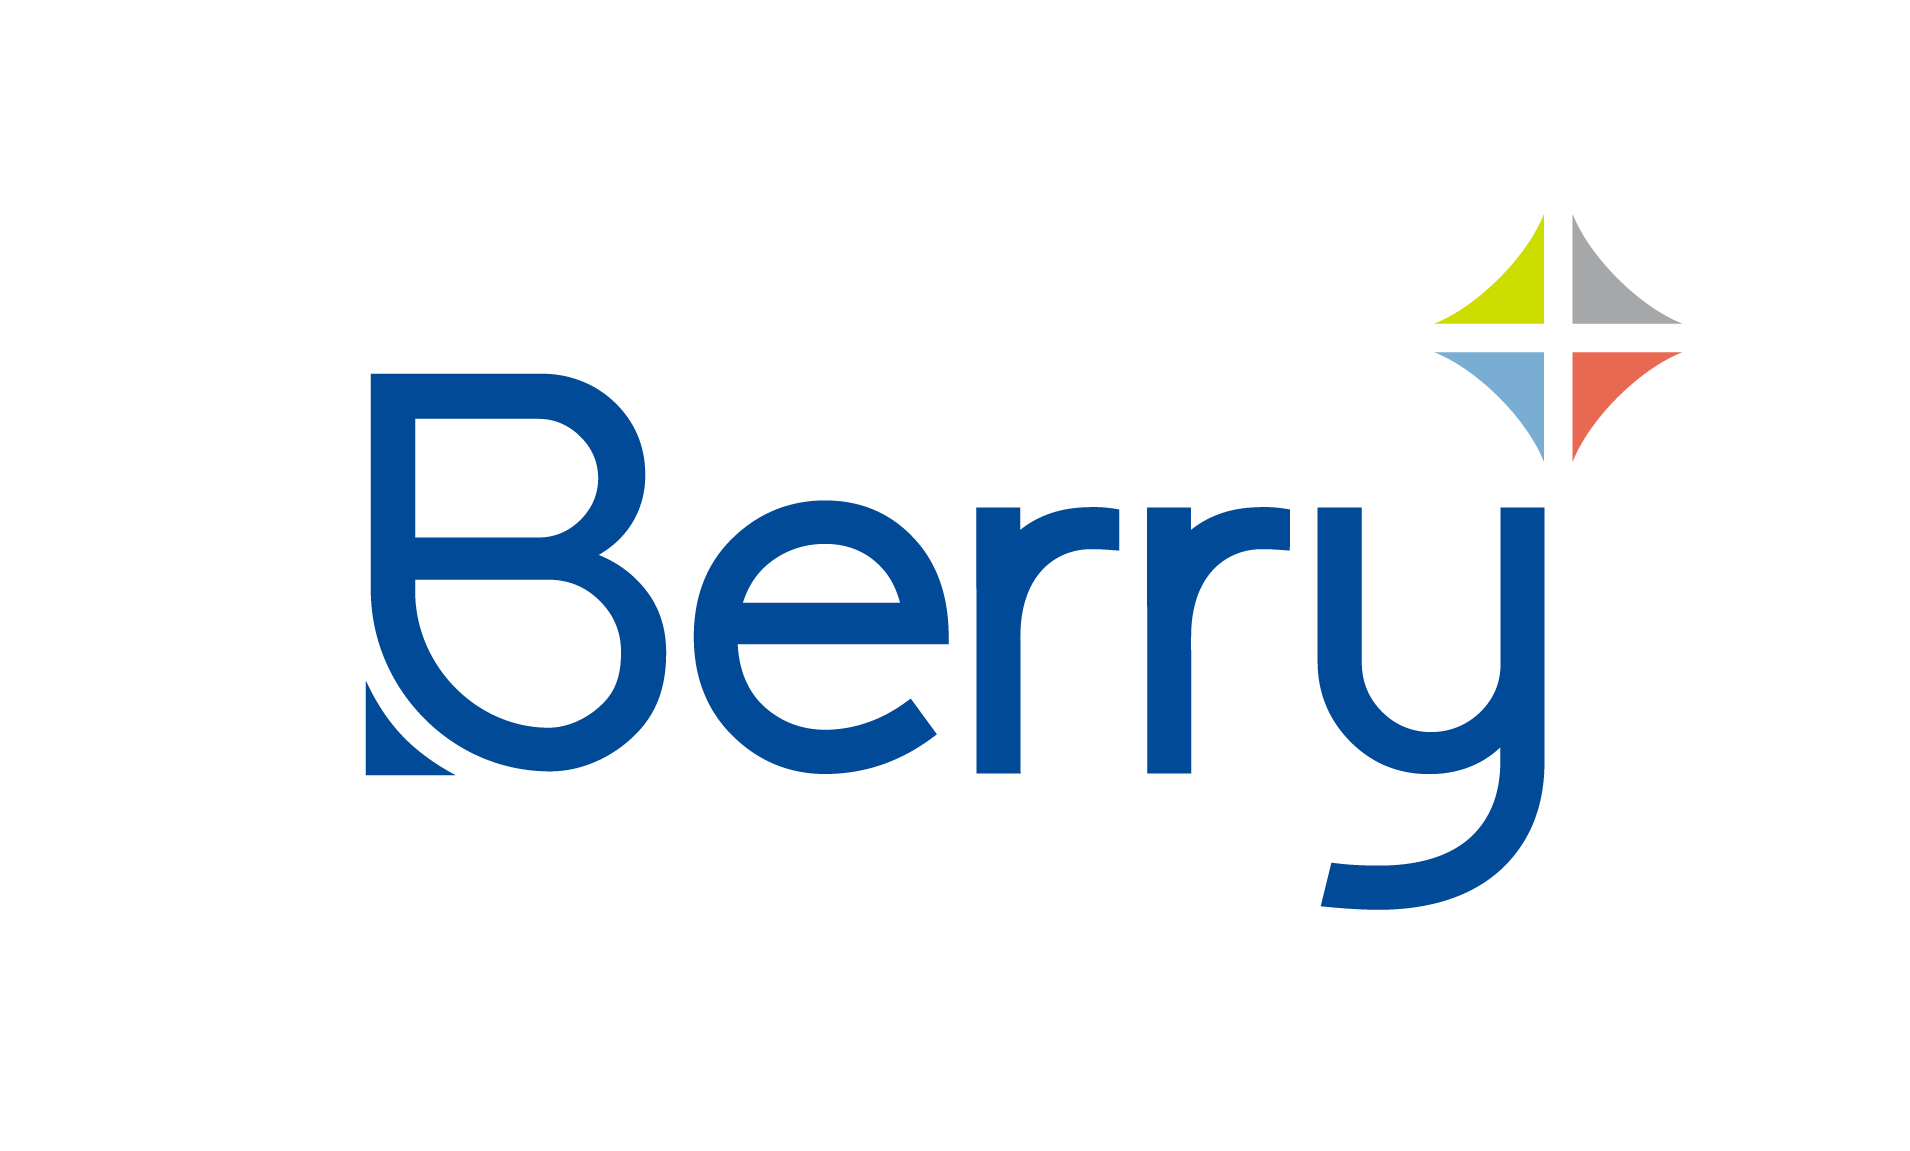 Berry Plastic logo